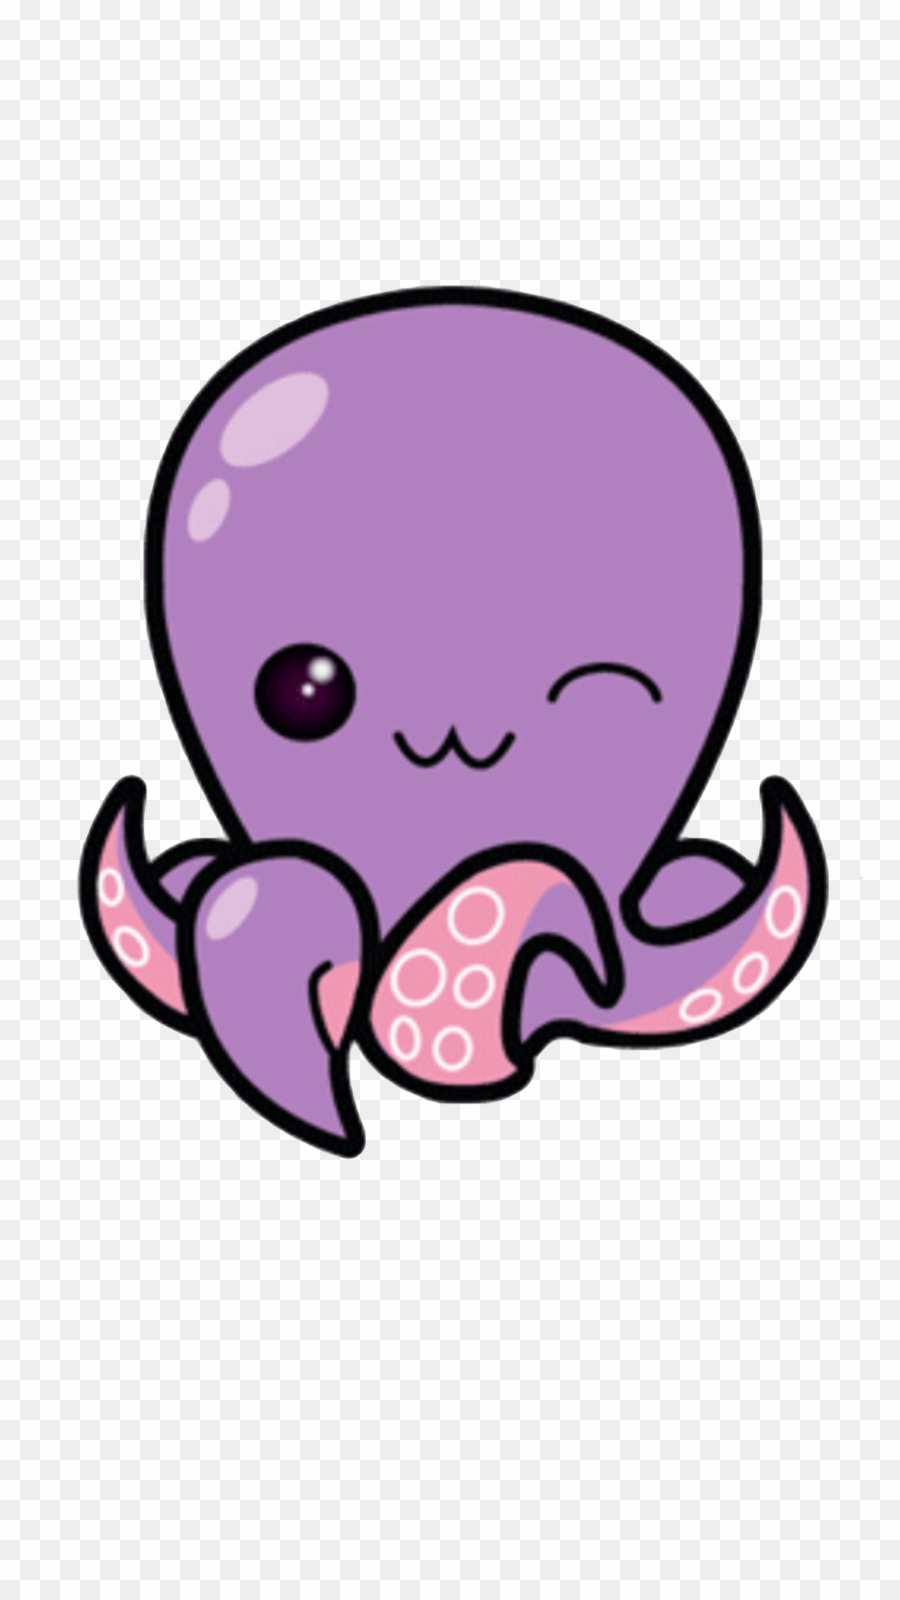 squid clipart cute